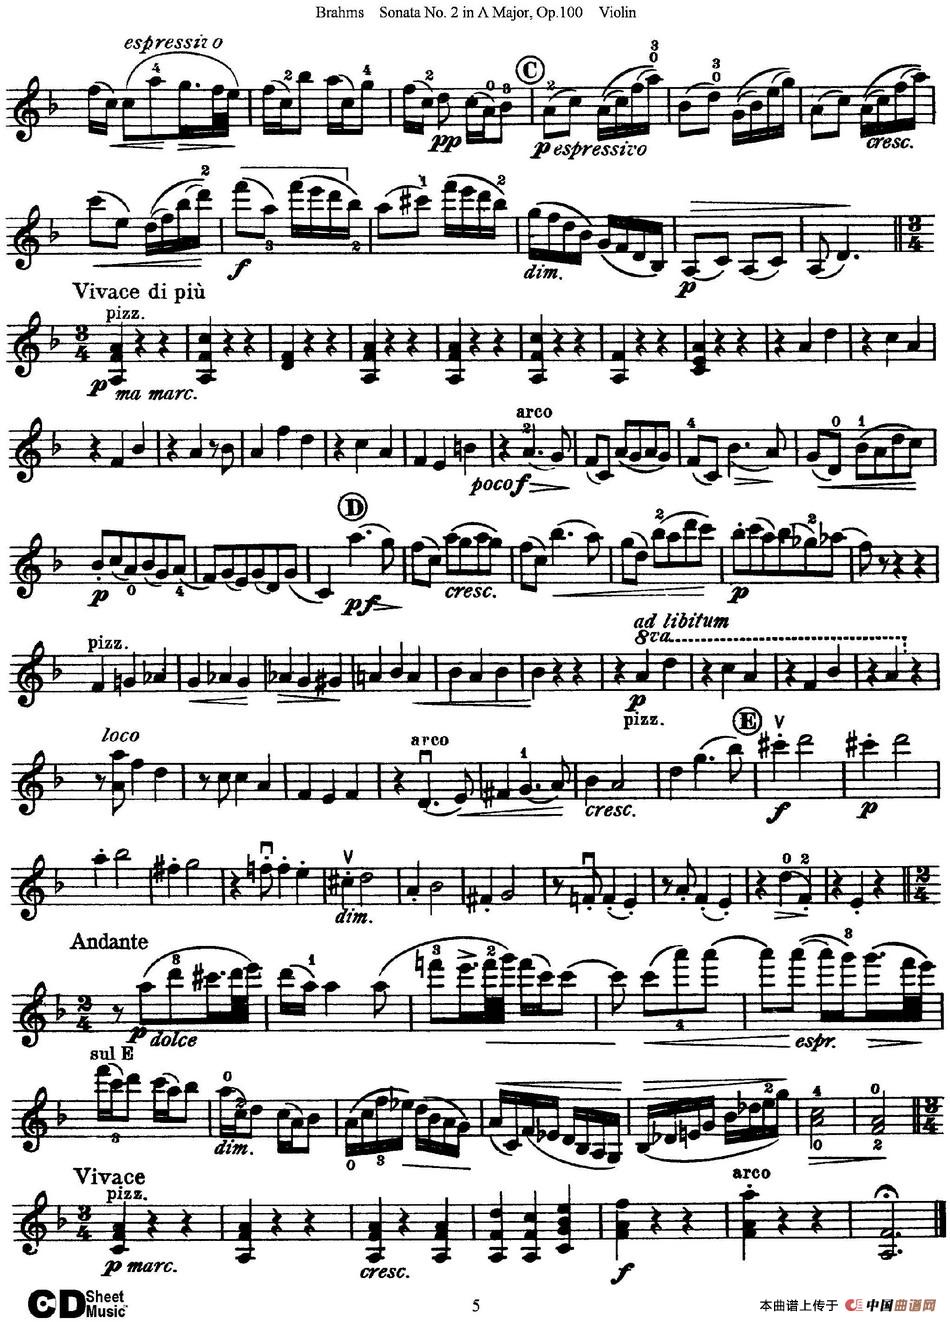 Violin Sonata No.2 in A Major Op.100